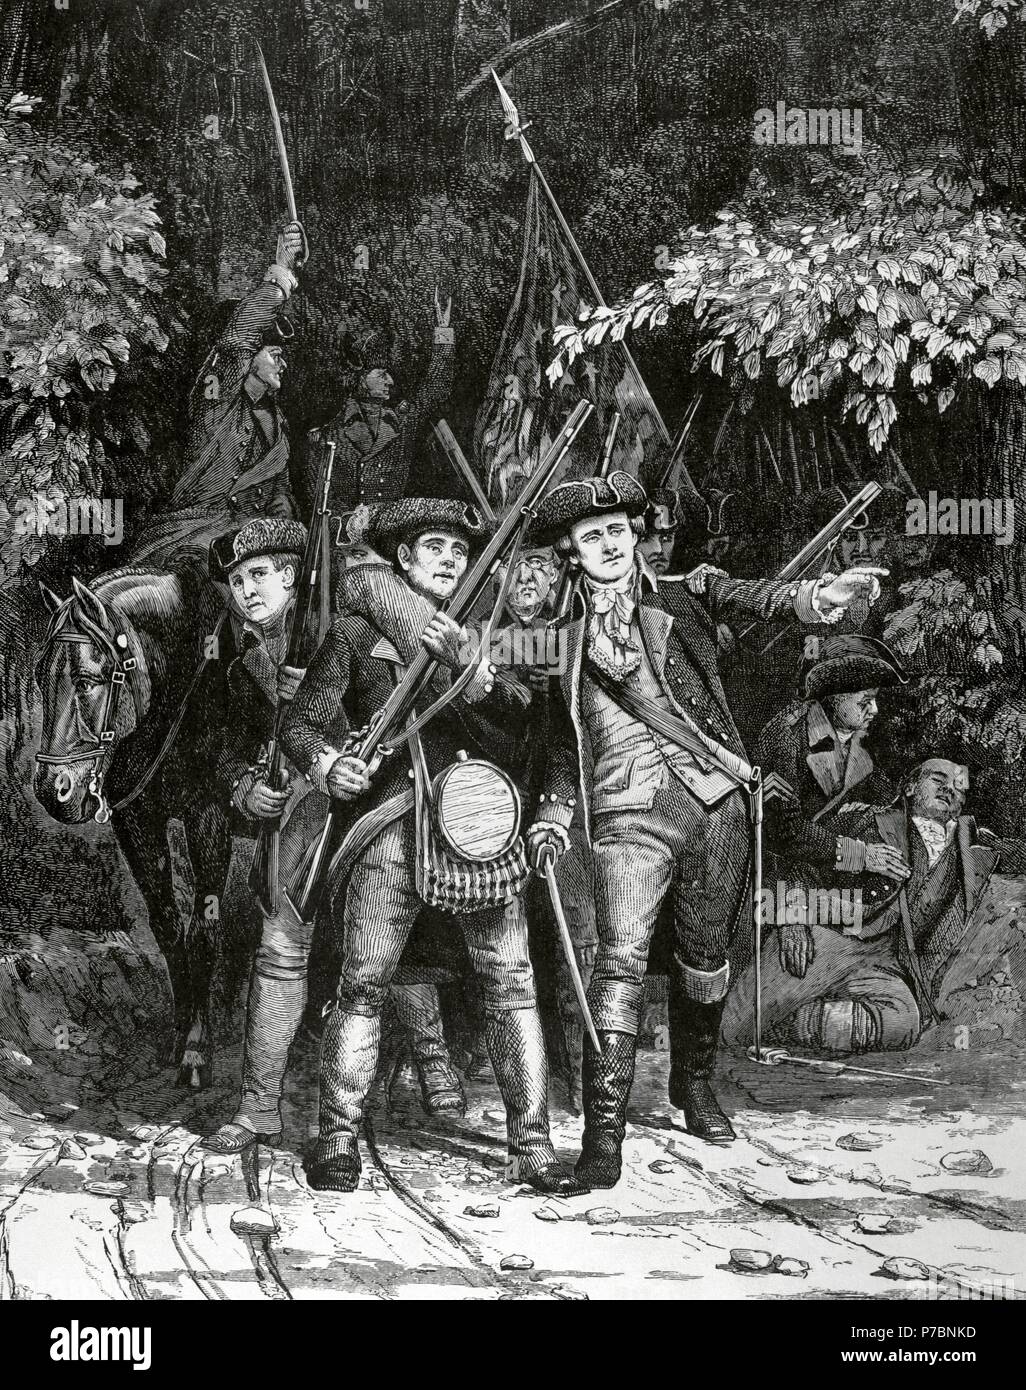 Guerre d'Indépendance américaine (1775-1783). Les soldats de la révolution américaine. Gravure par Julian Scott dans le Harper's Weekly, 1876. Banque D'Images